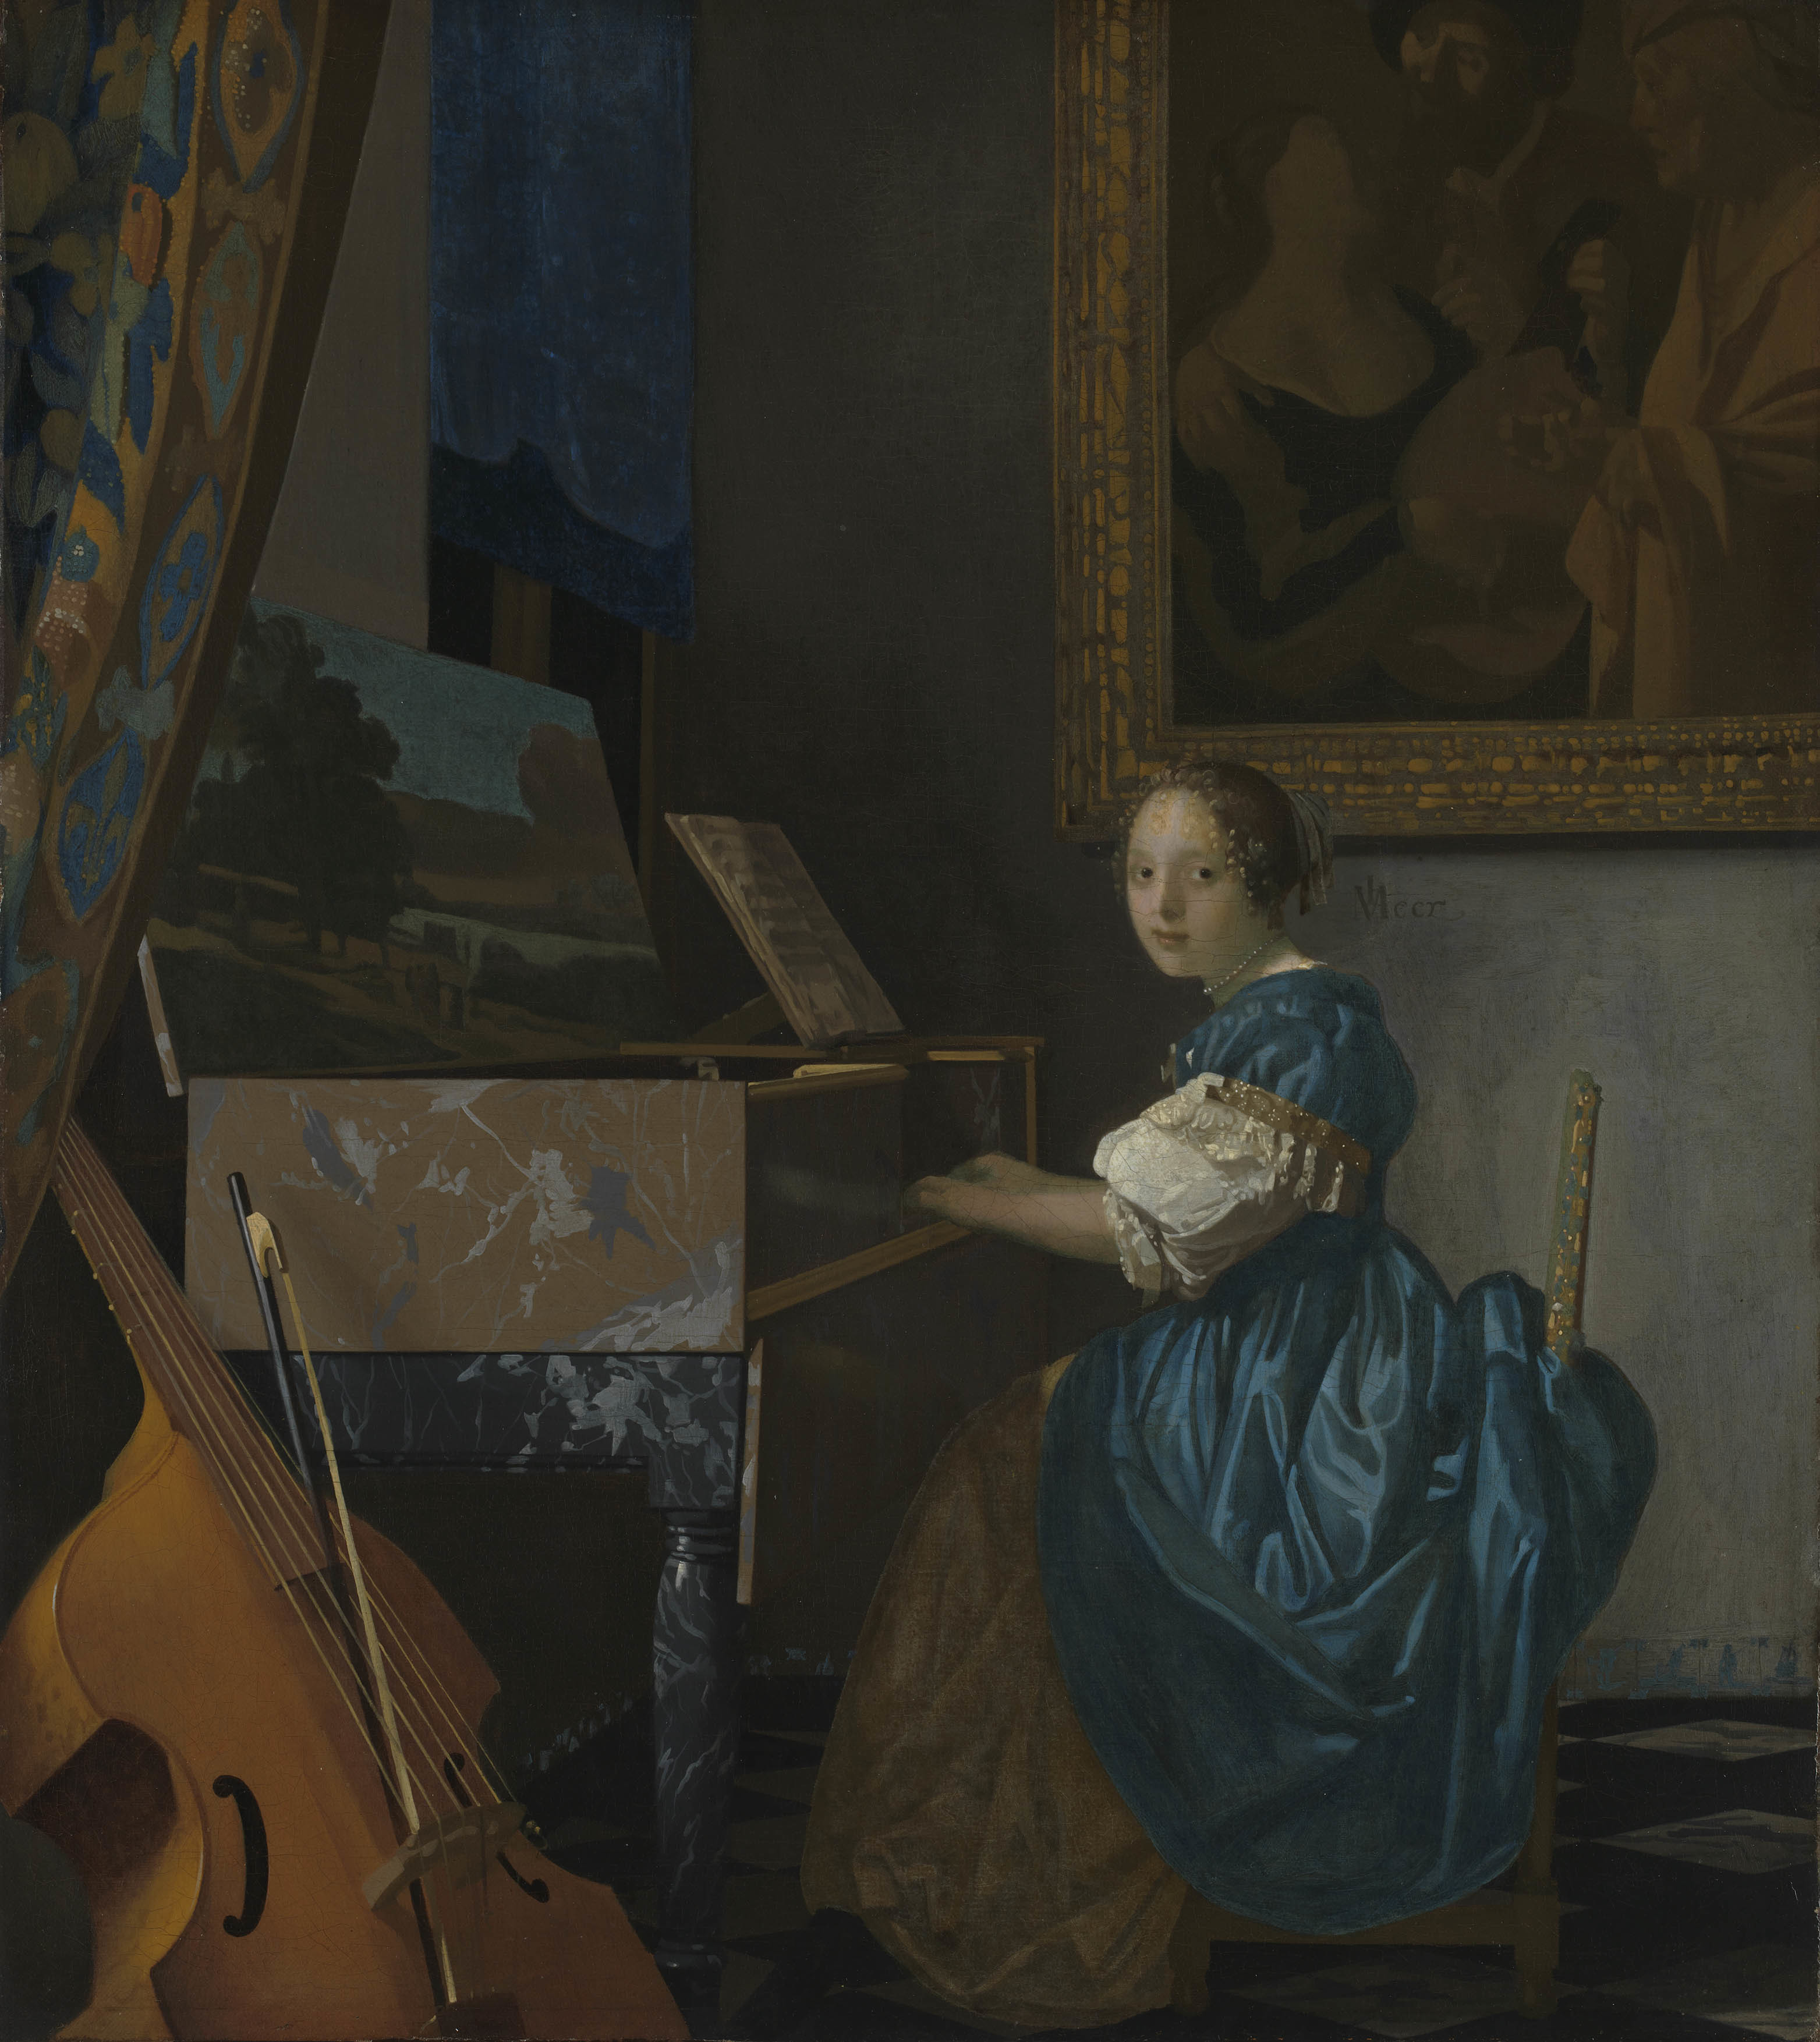 ヨハネス・フェルメール 《ヴァージナルの前に座る若い女性》 1670-72年頃 油彩・カンヴァス 51.5×45.5cm  (C)The National Gallery, London. Salting Bequest, 1910